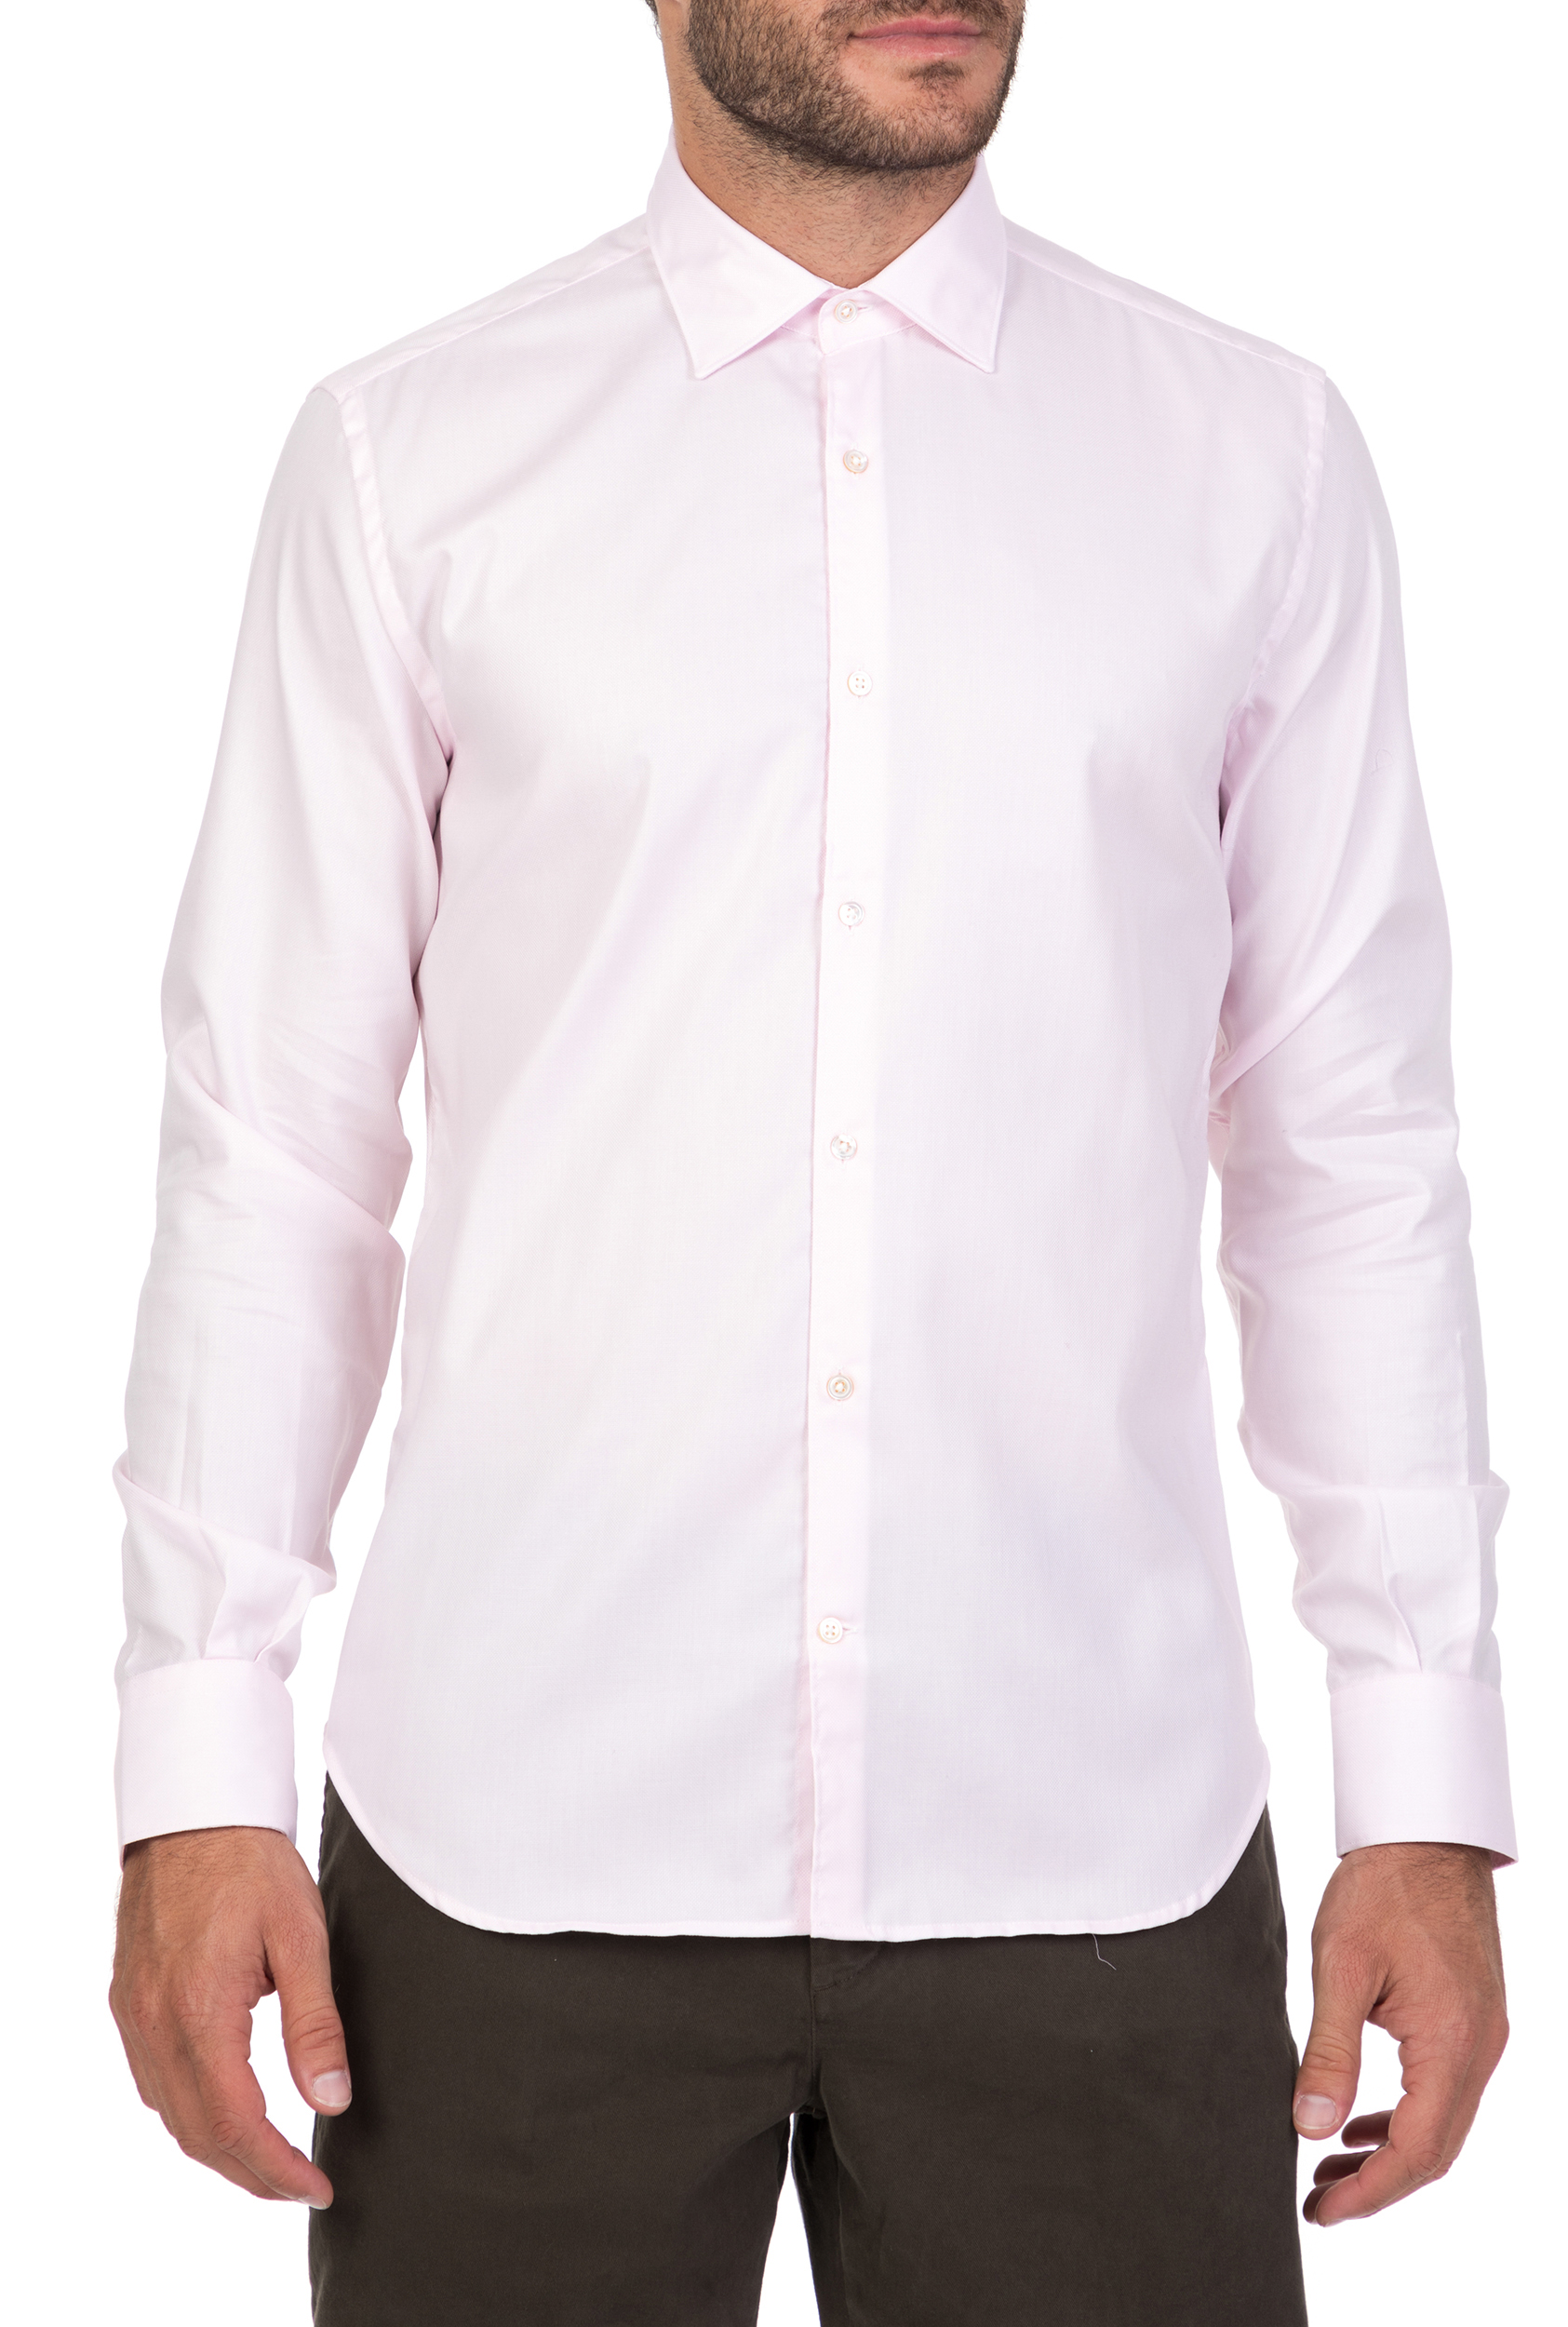 BROOKSFIELD - Ανδρικό μακρυμάνικο πουκάμισο BROOKSFIELD ροζ Ανδρικά/Ρούχα/Πουκάμισα/Μακρυμάνικα